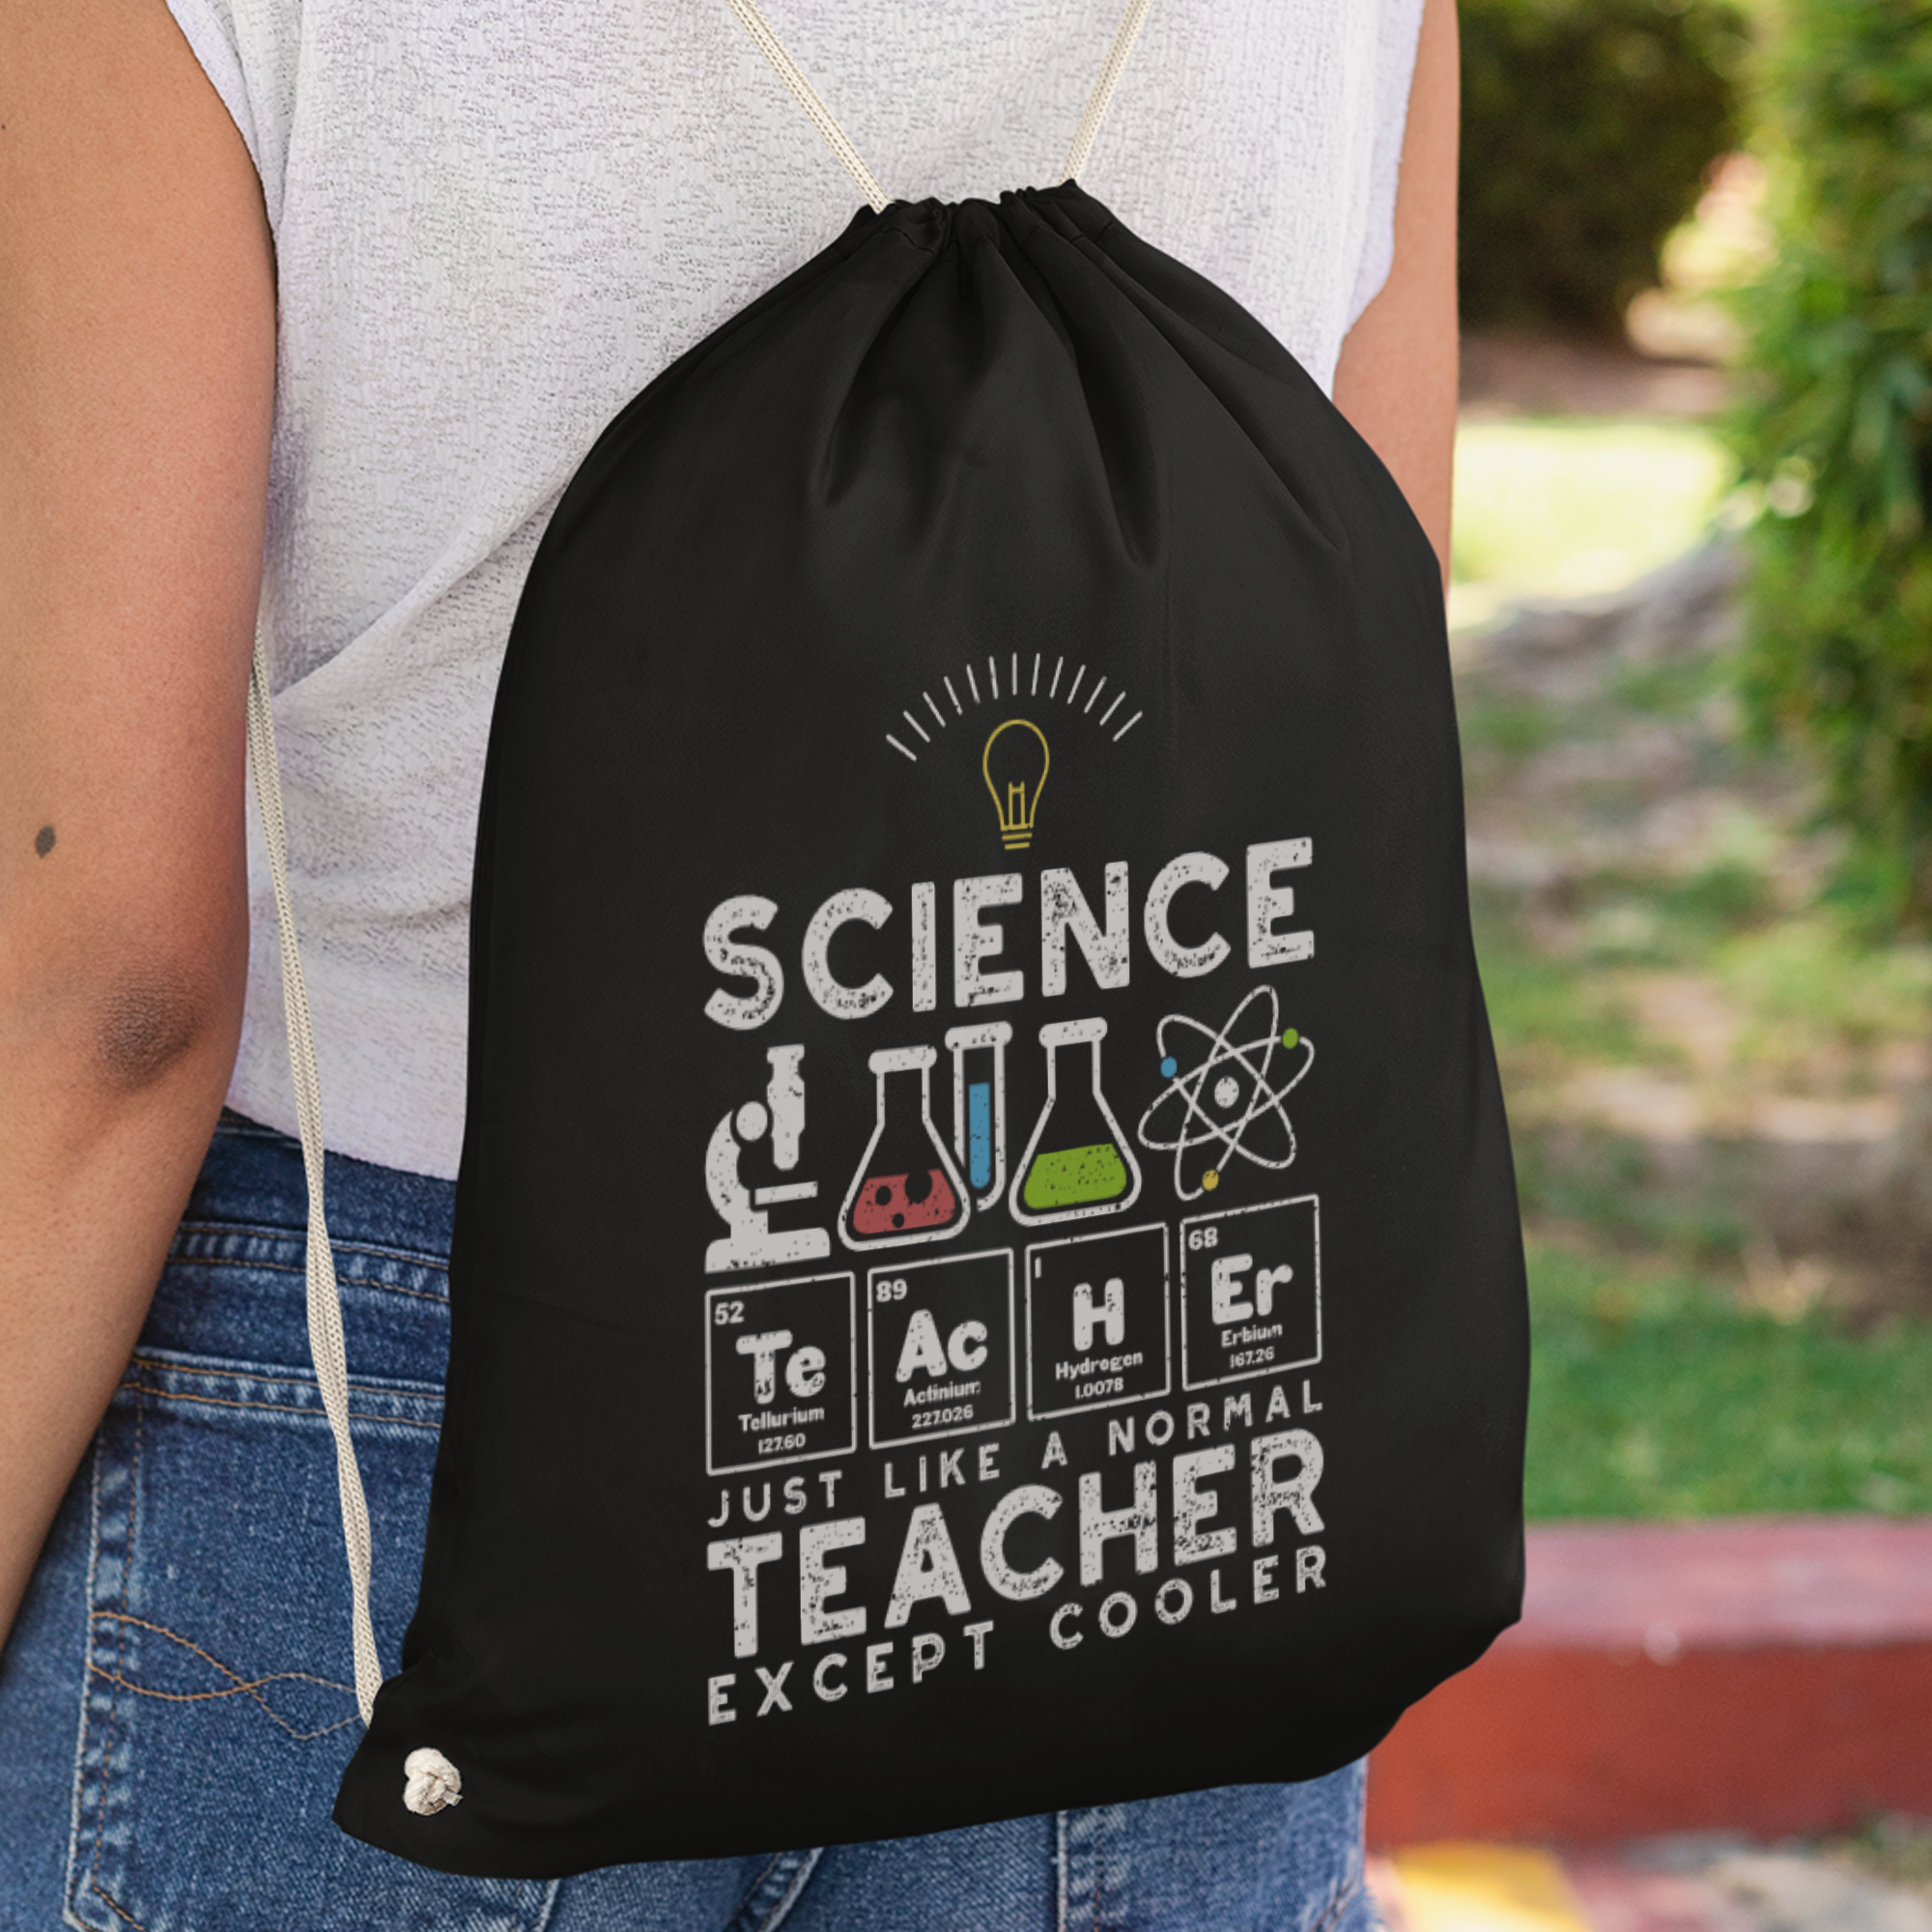 Science Teacher Just Like A Normal Teacher Except Cooler Turnbeutel - DESIGNSBYJNK5.COM